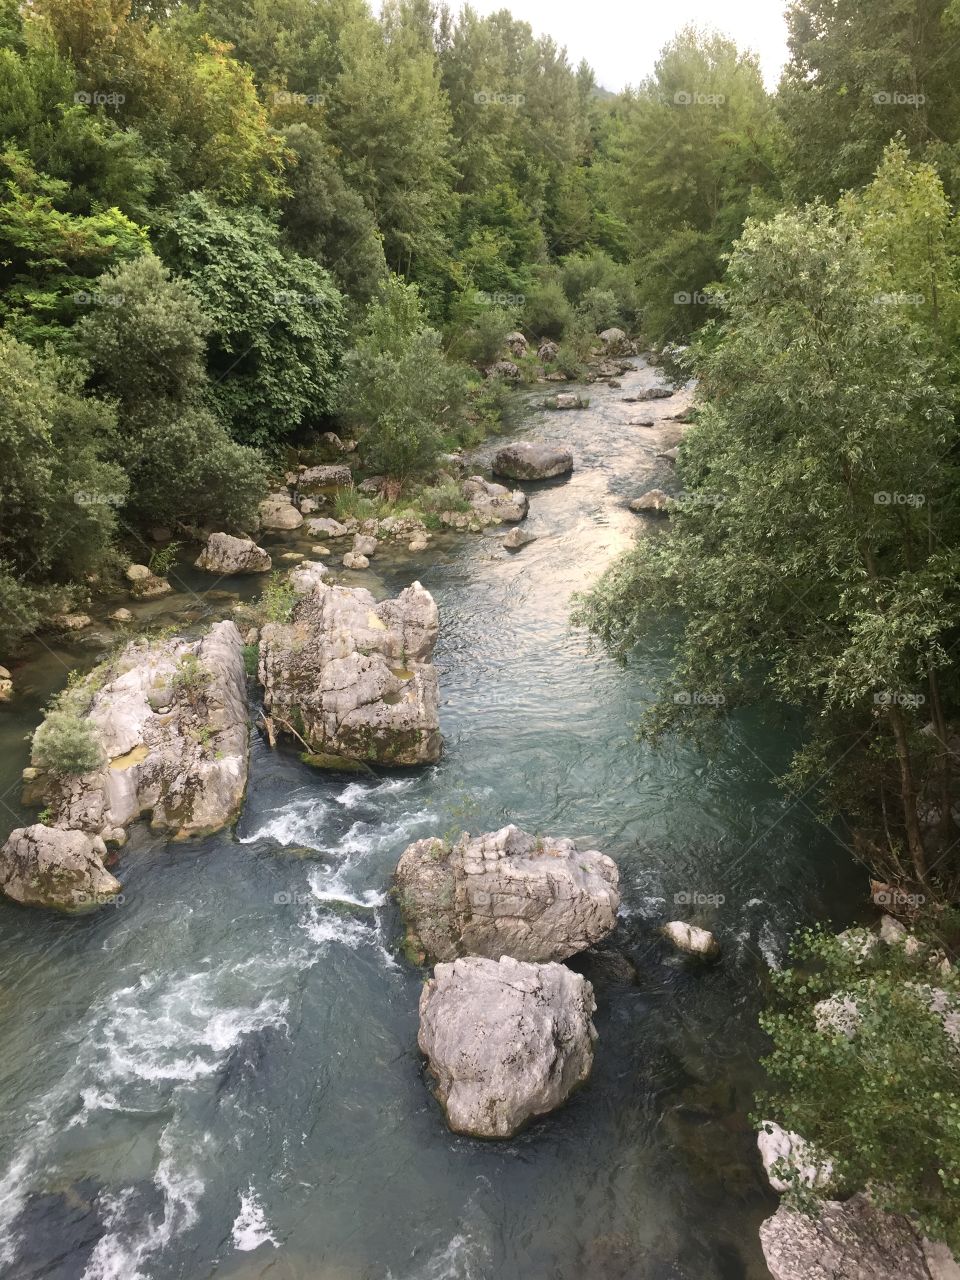 Trentino river

